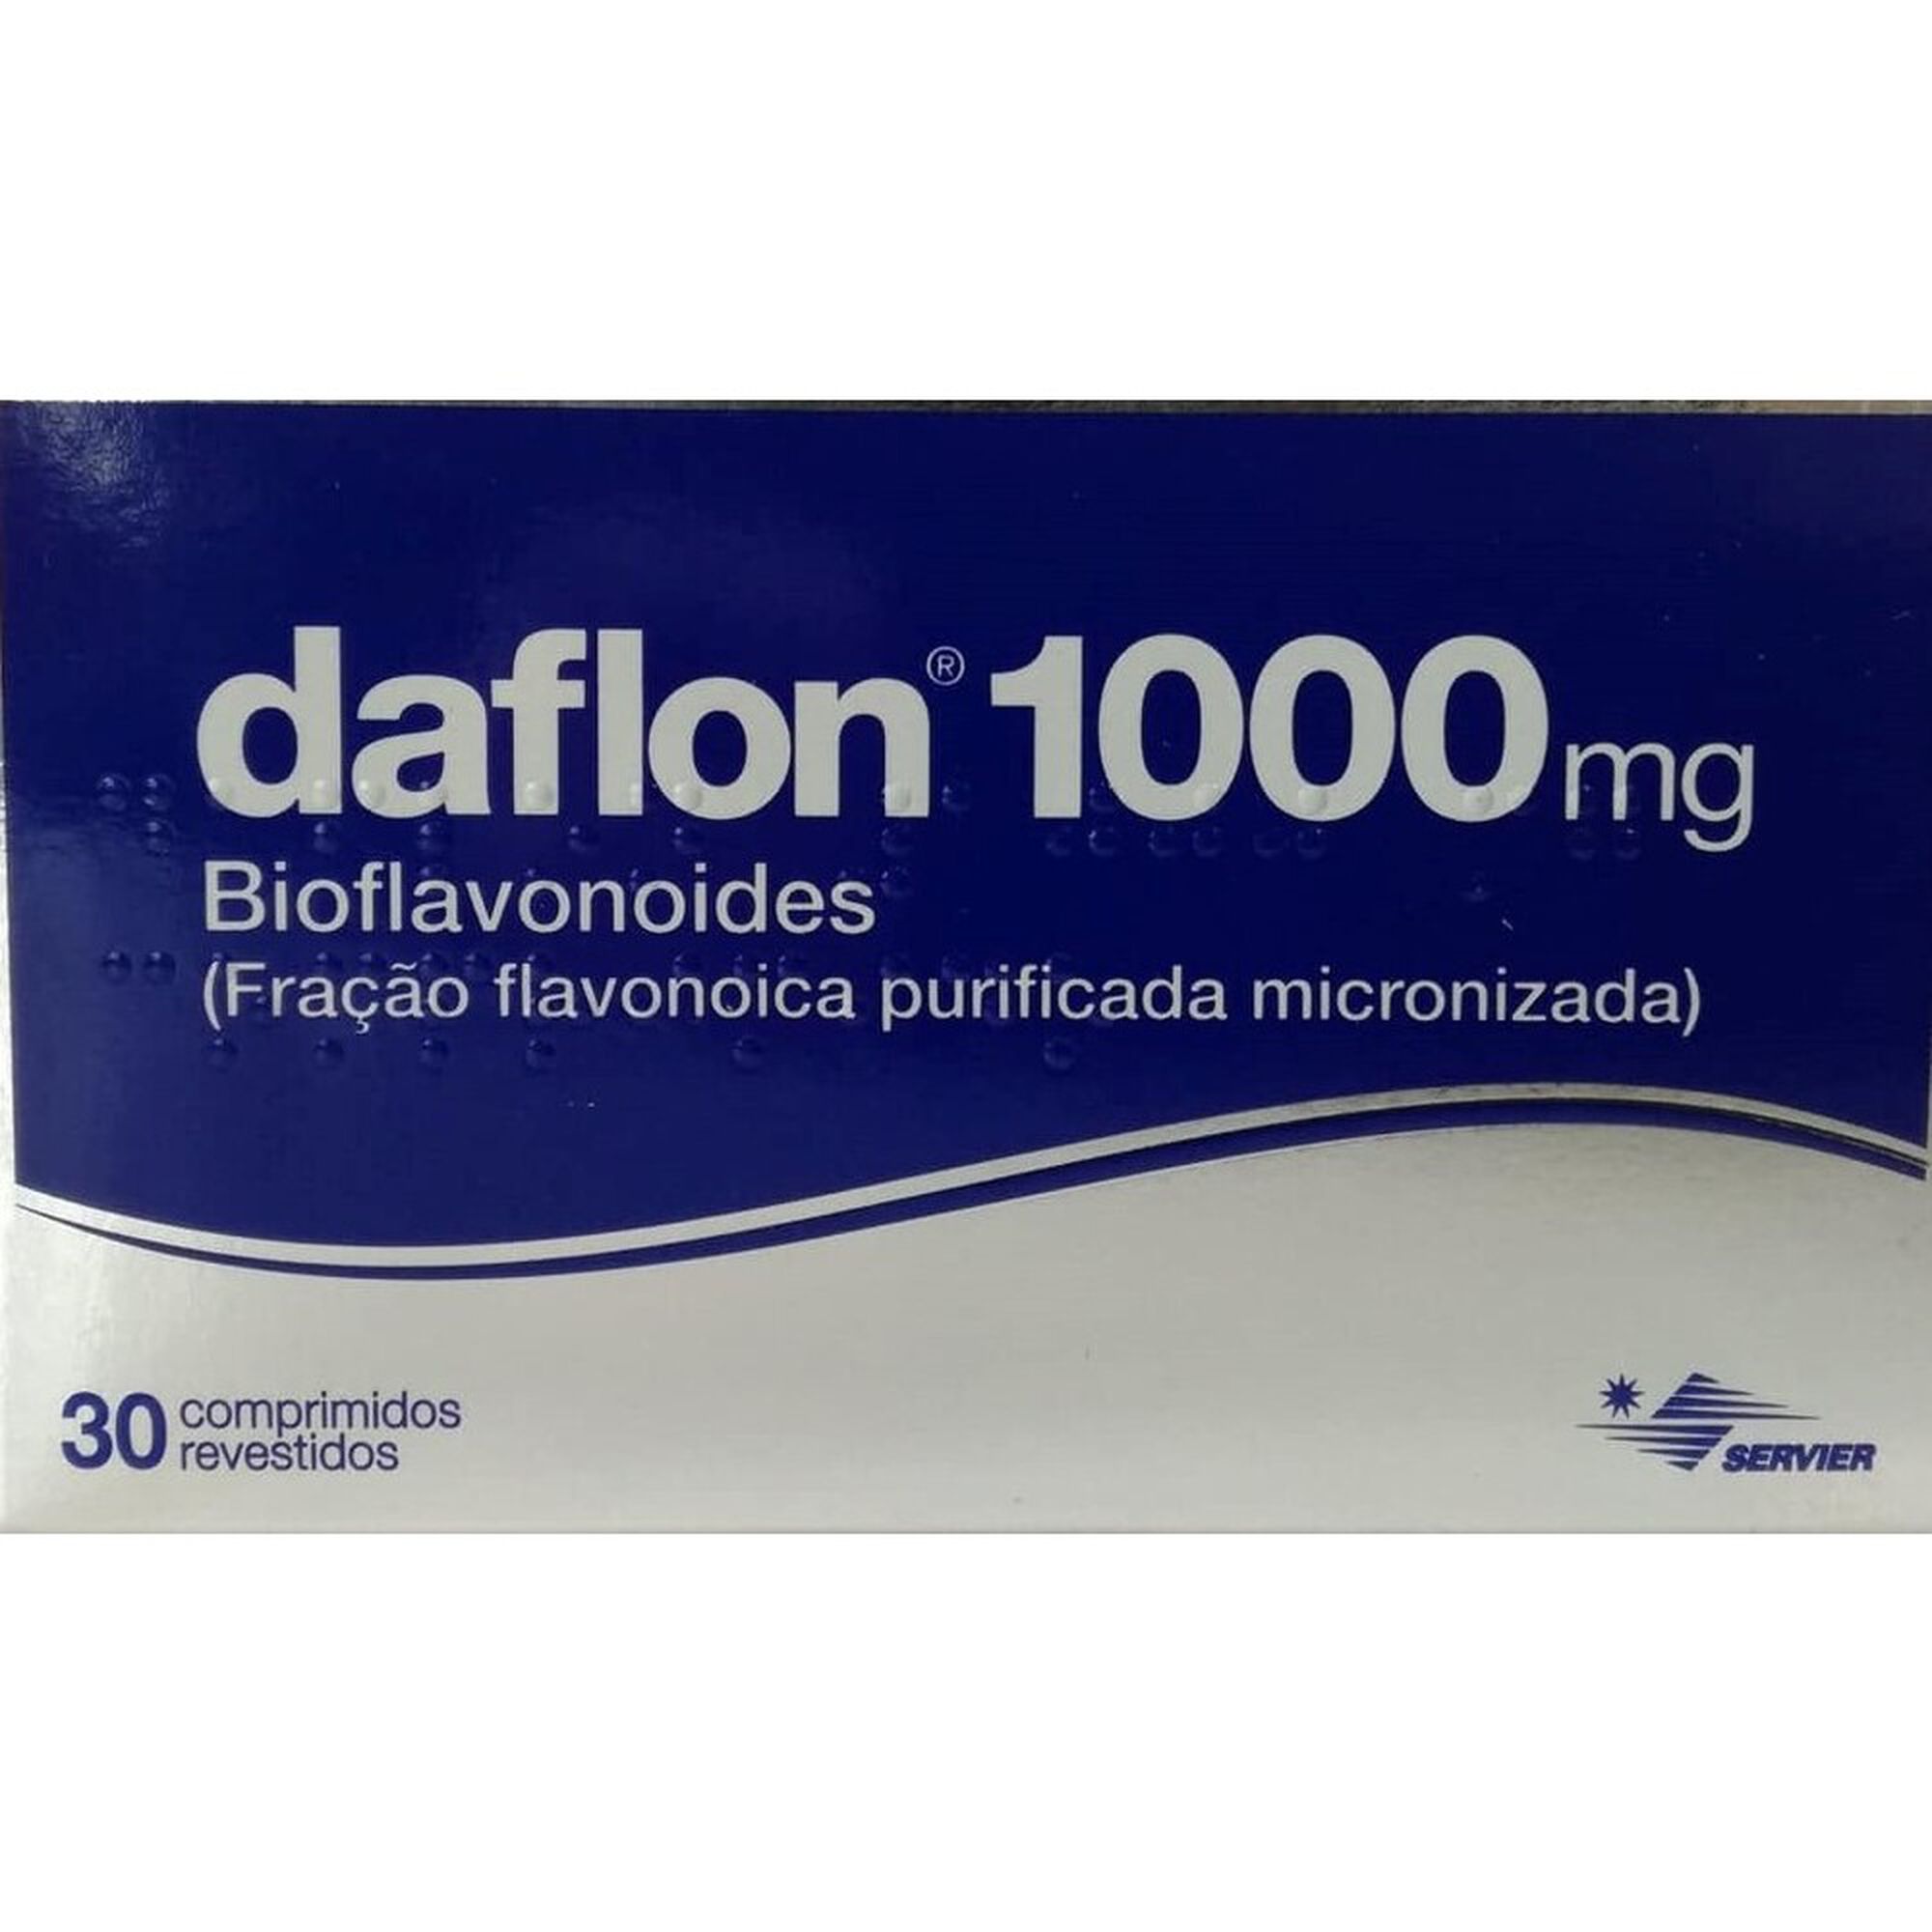 NOVO Daflon® 1000mg: agora disponível em comprimidos mastigáveis!